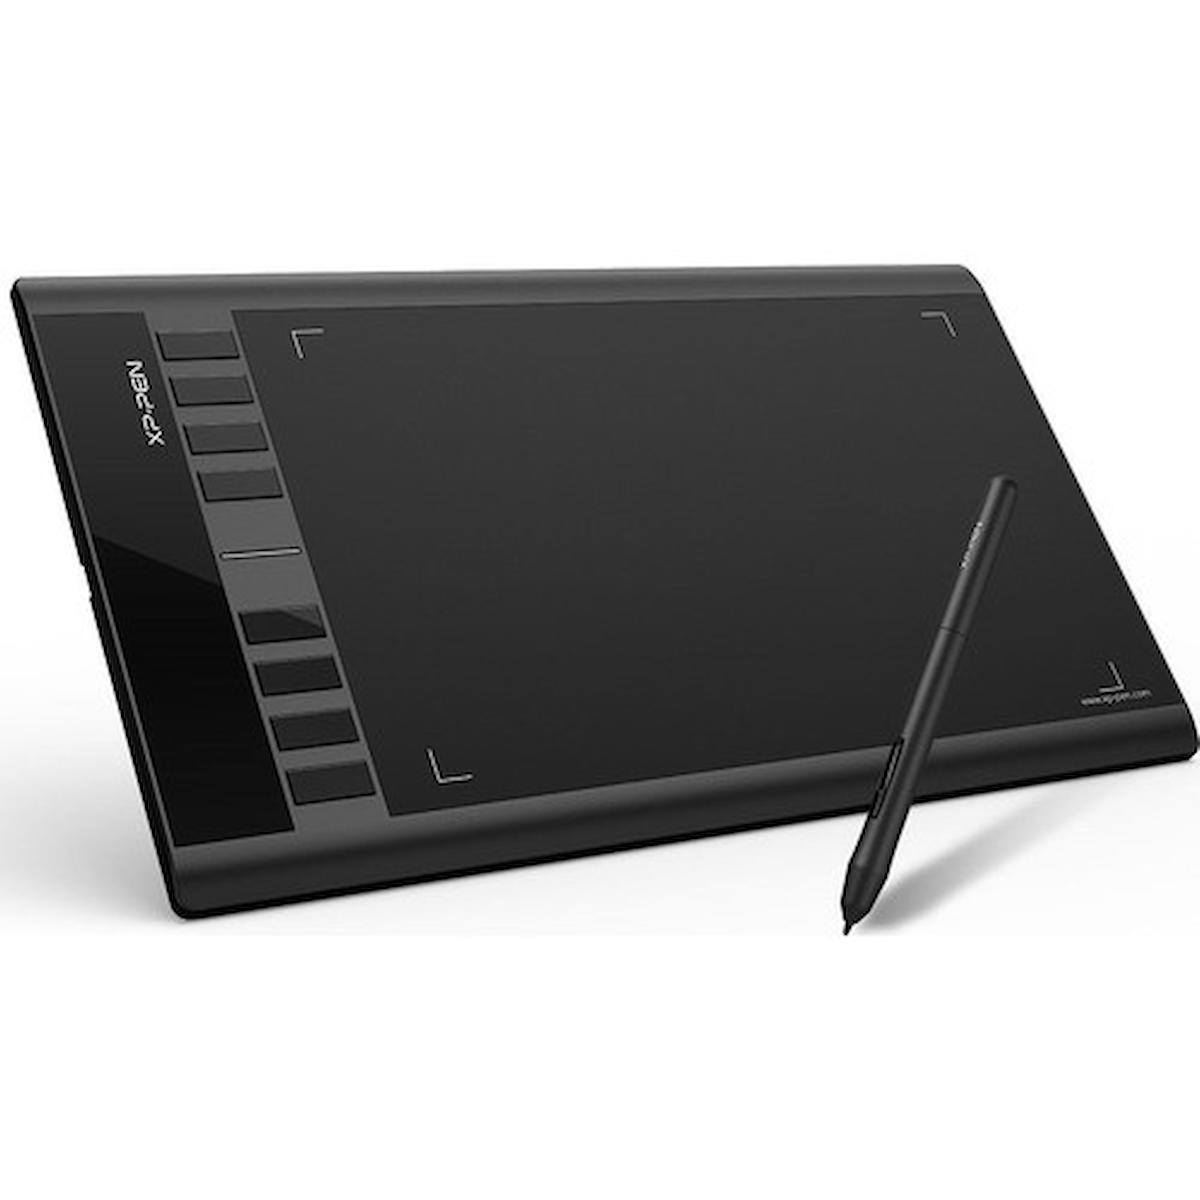 Xp-Pen Star03 V2 Kablosuz Kalemli 10.6 inç Grafik Tablet